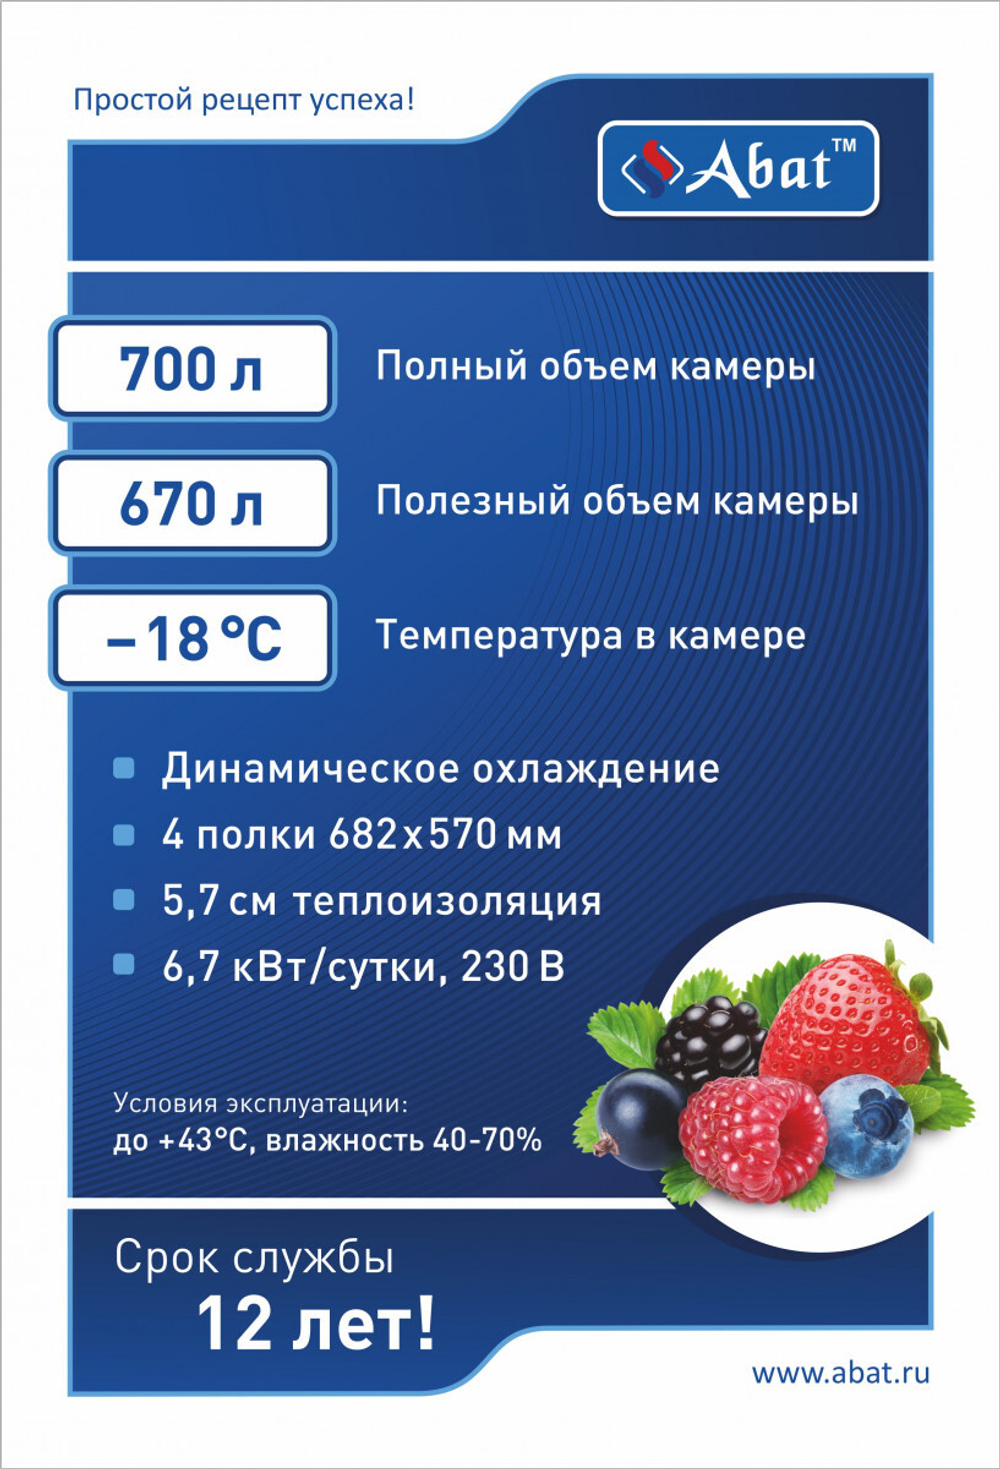 Шкаф холодильный низкотемпературный ШХн-0,7-02 краш. (нижний агрегат)